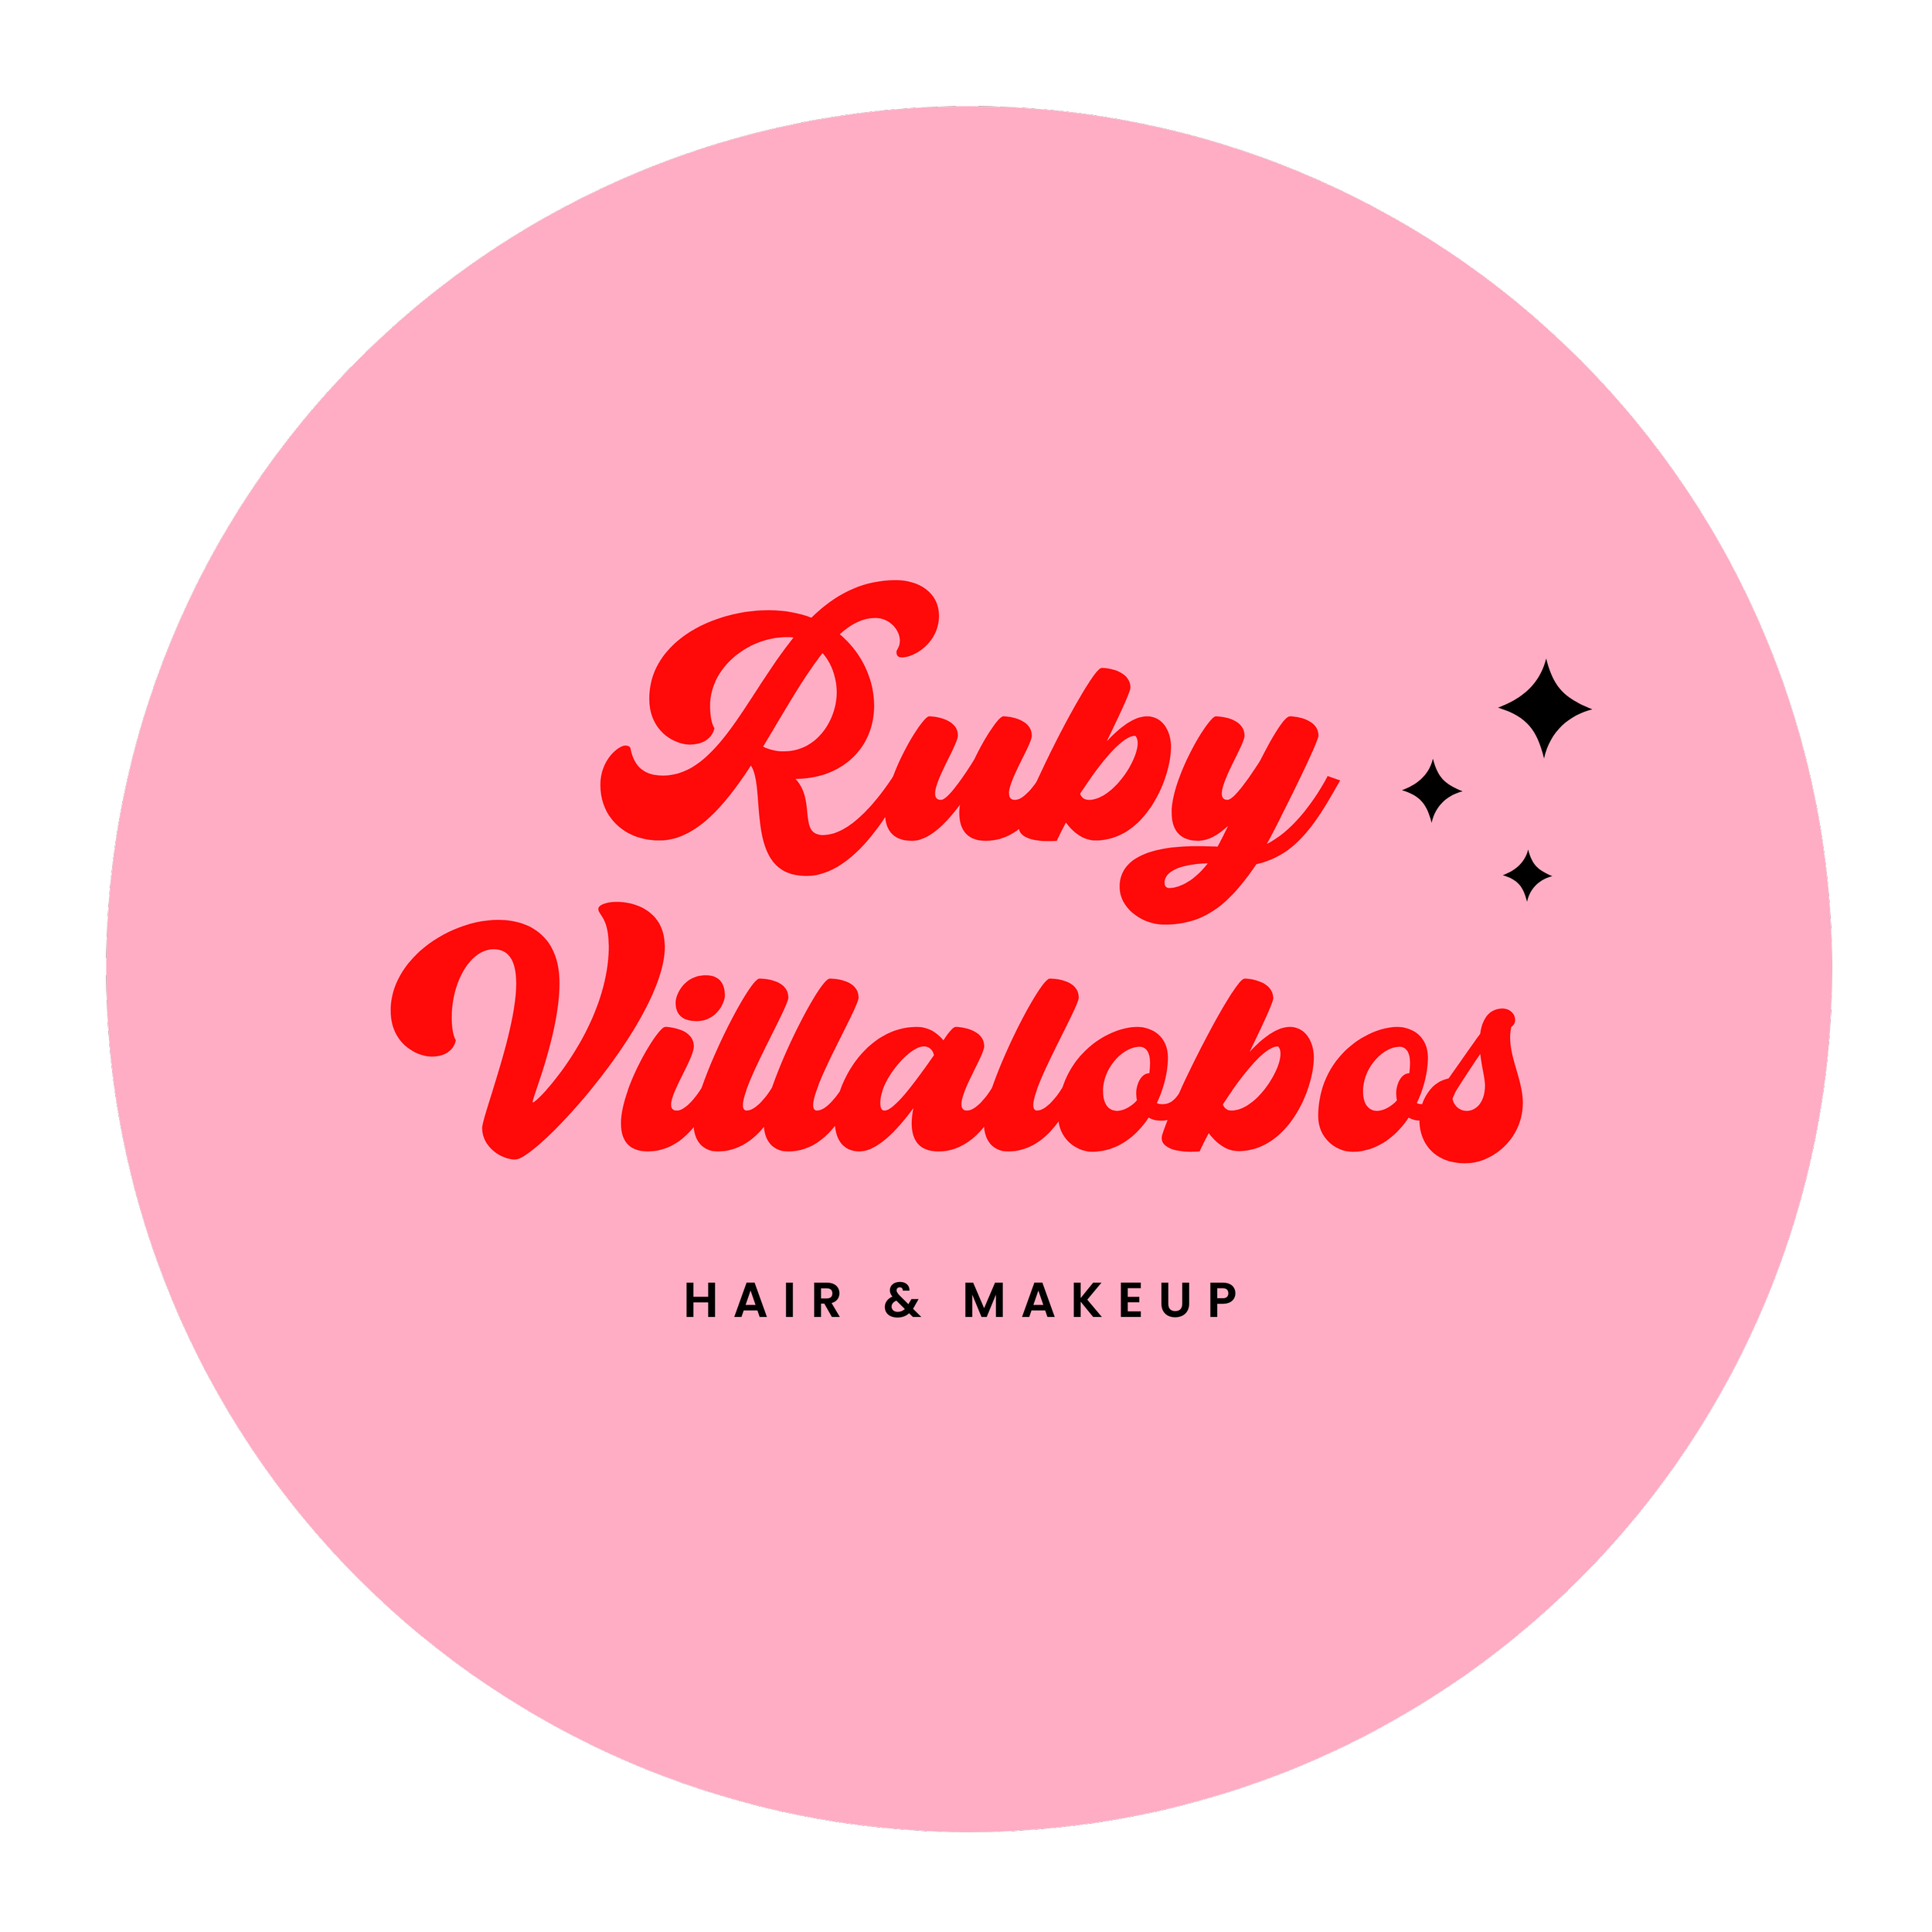 Ruby Villalobos